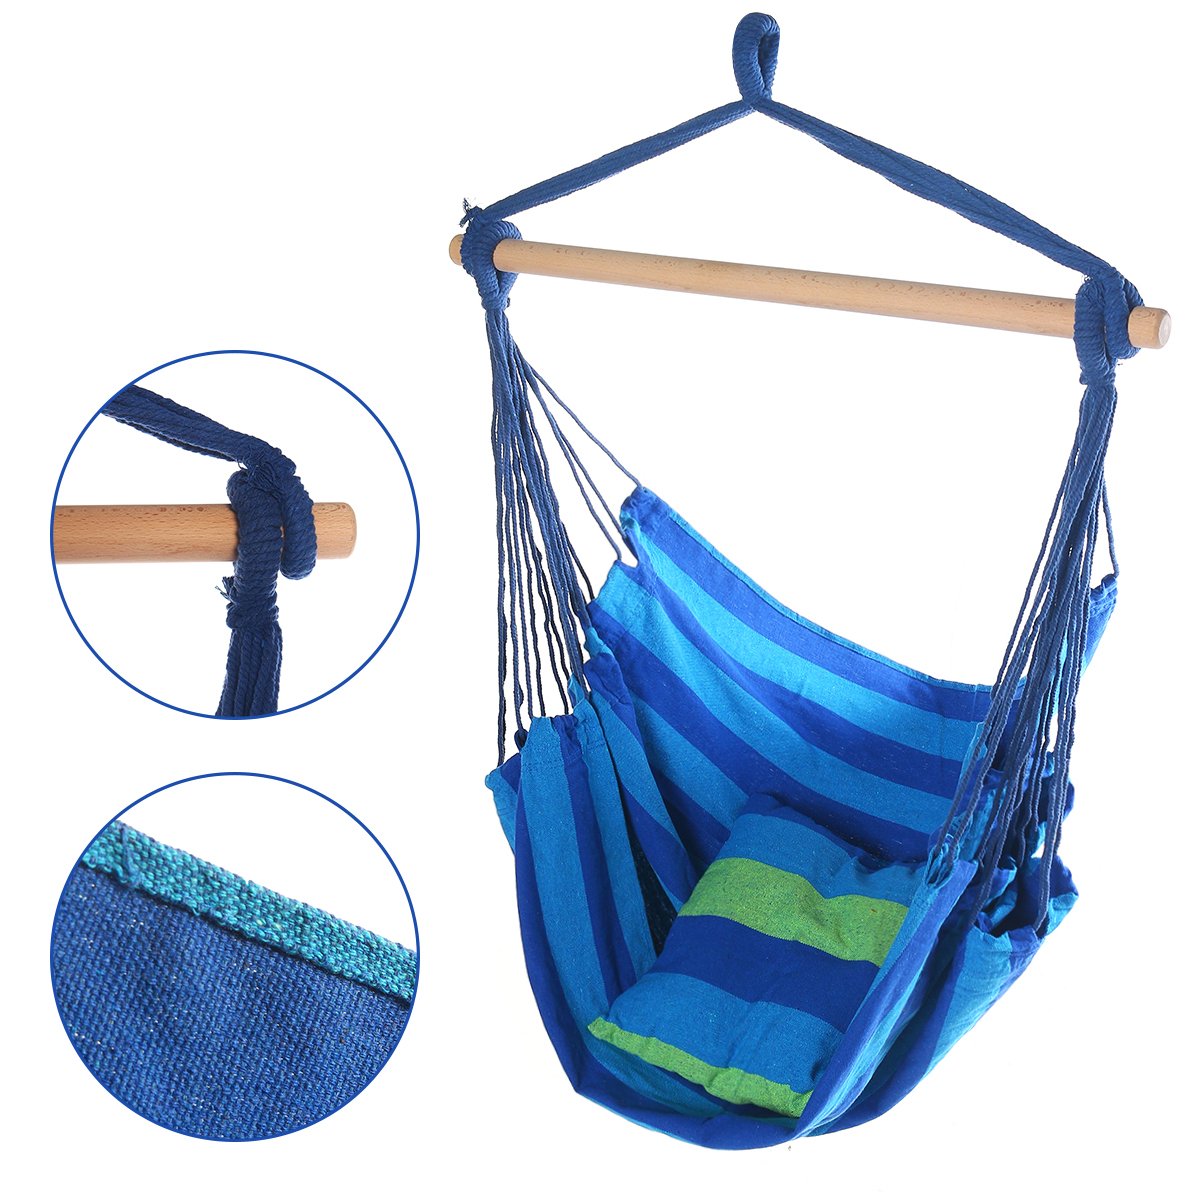 Swing-Hammock-Hanging-Chair-Garden-Indoor-Outdoor-Swing-Seat-1711721-3